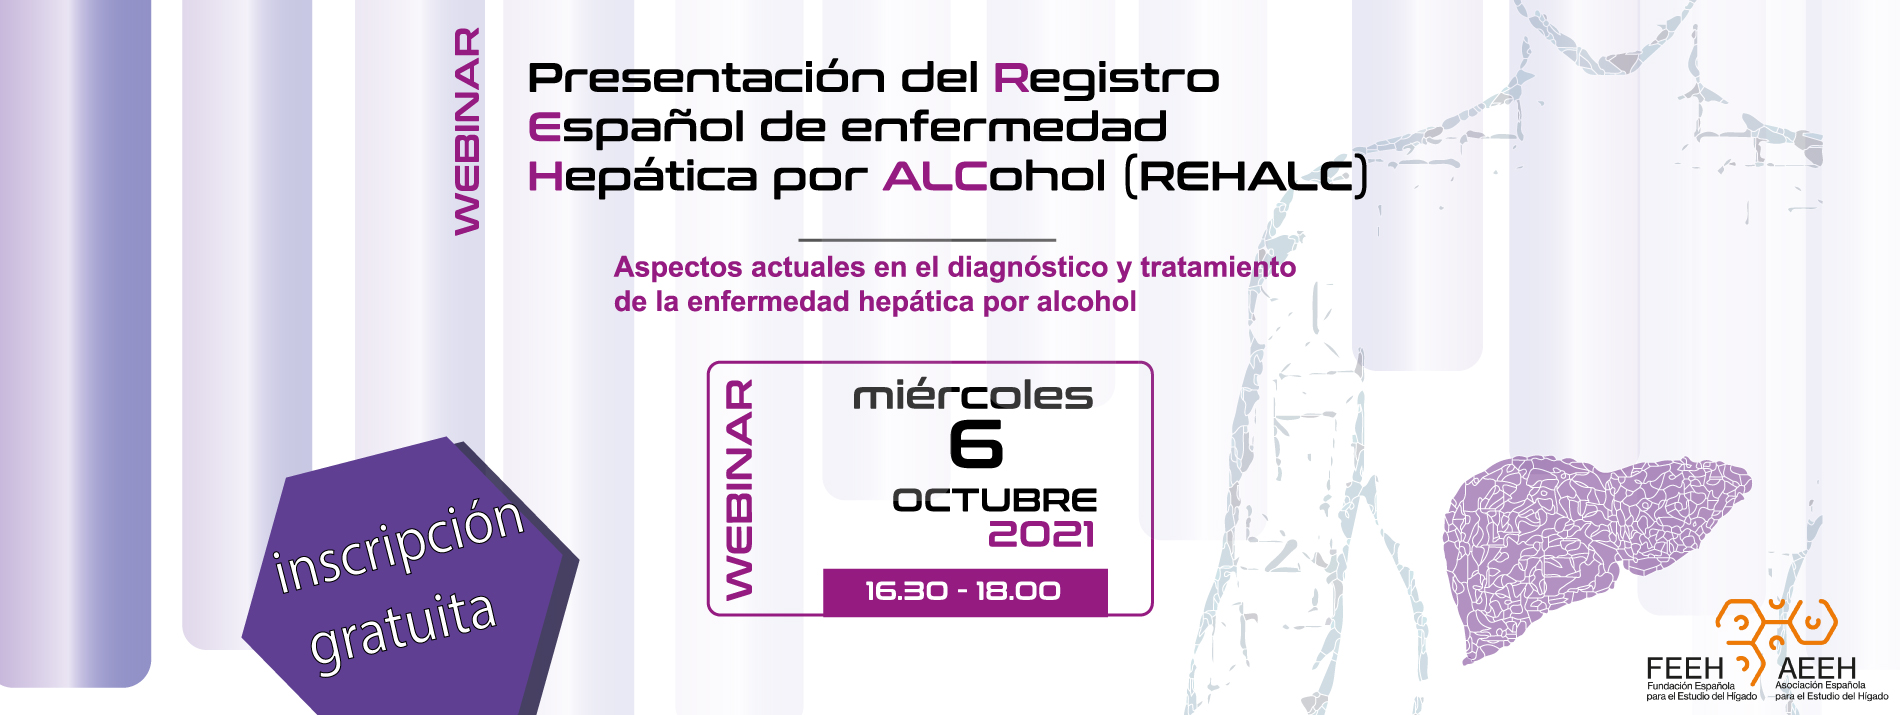 Presentación del Registro Español de Enfermedad Hepática por Alcohol